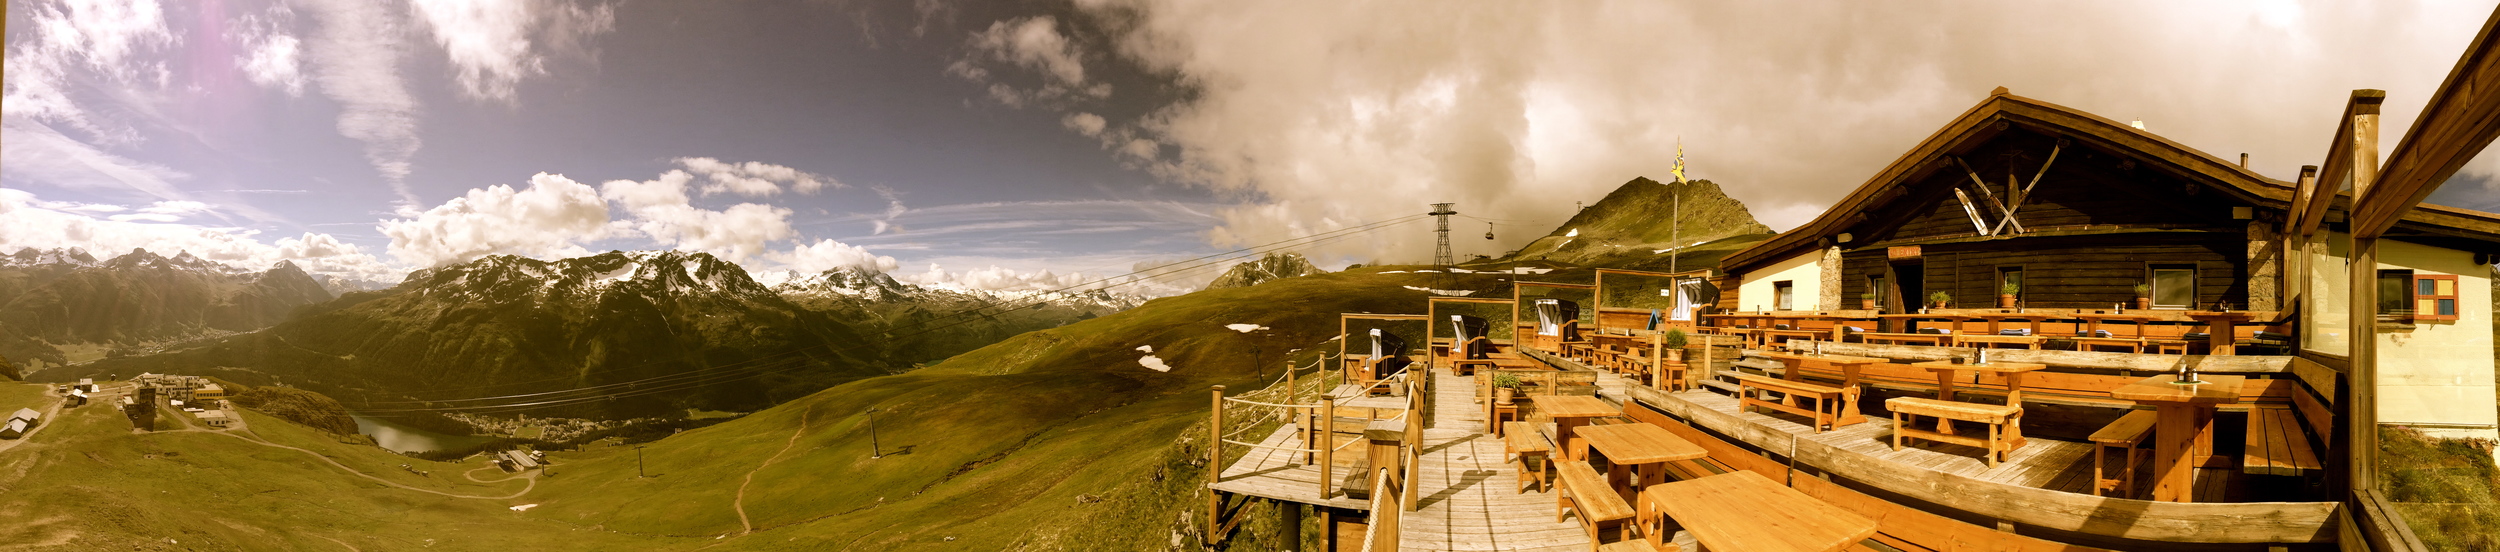 Panorama Alpina Hütte 